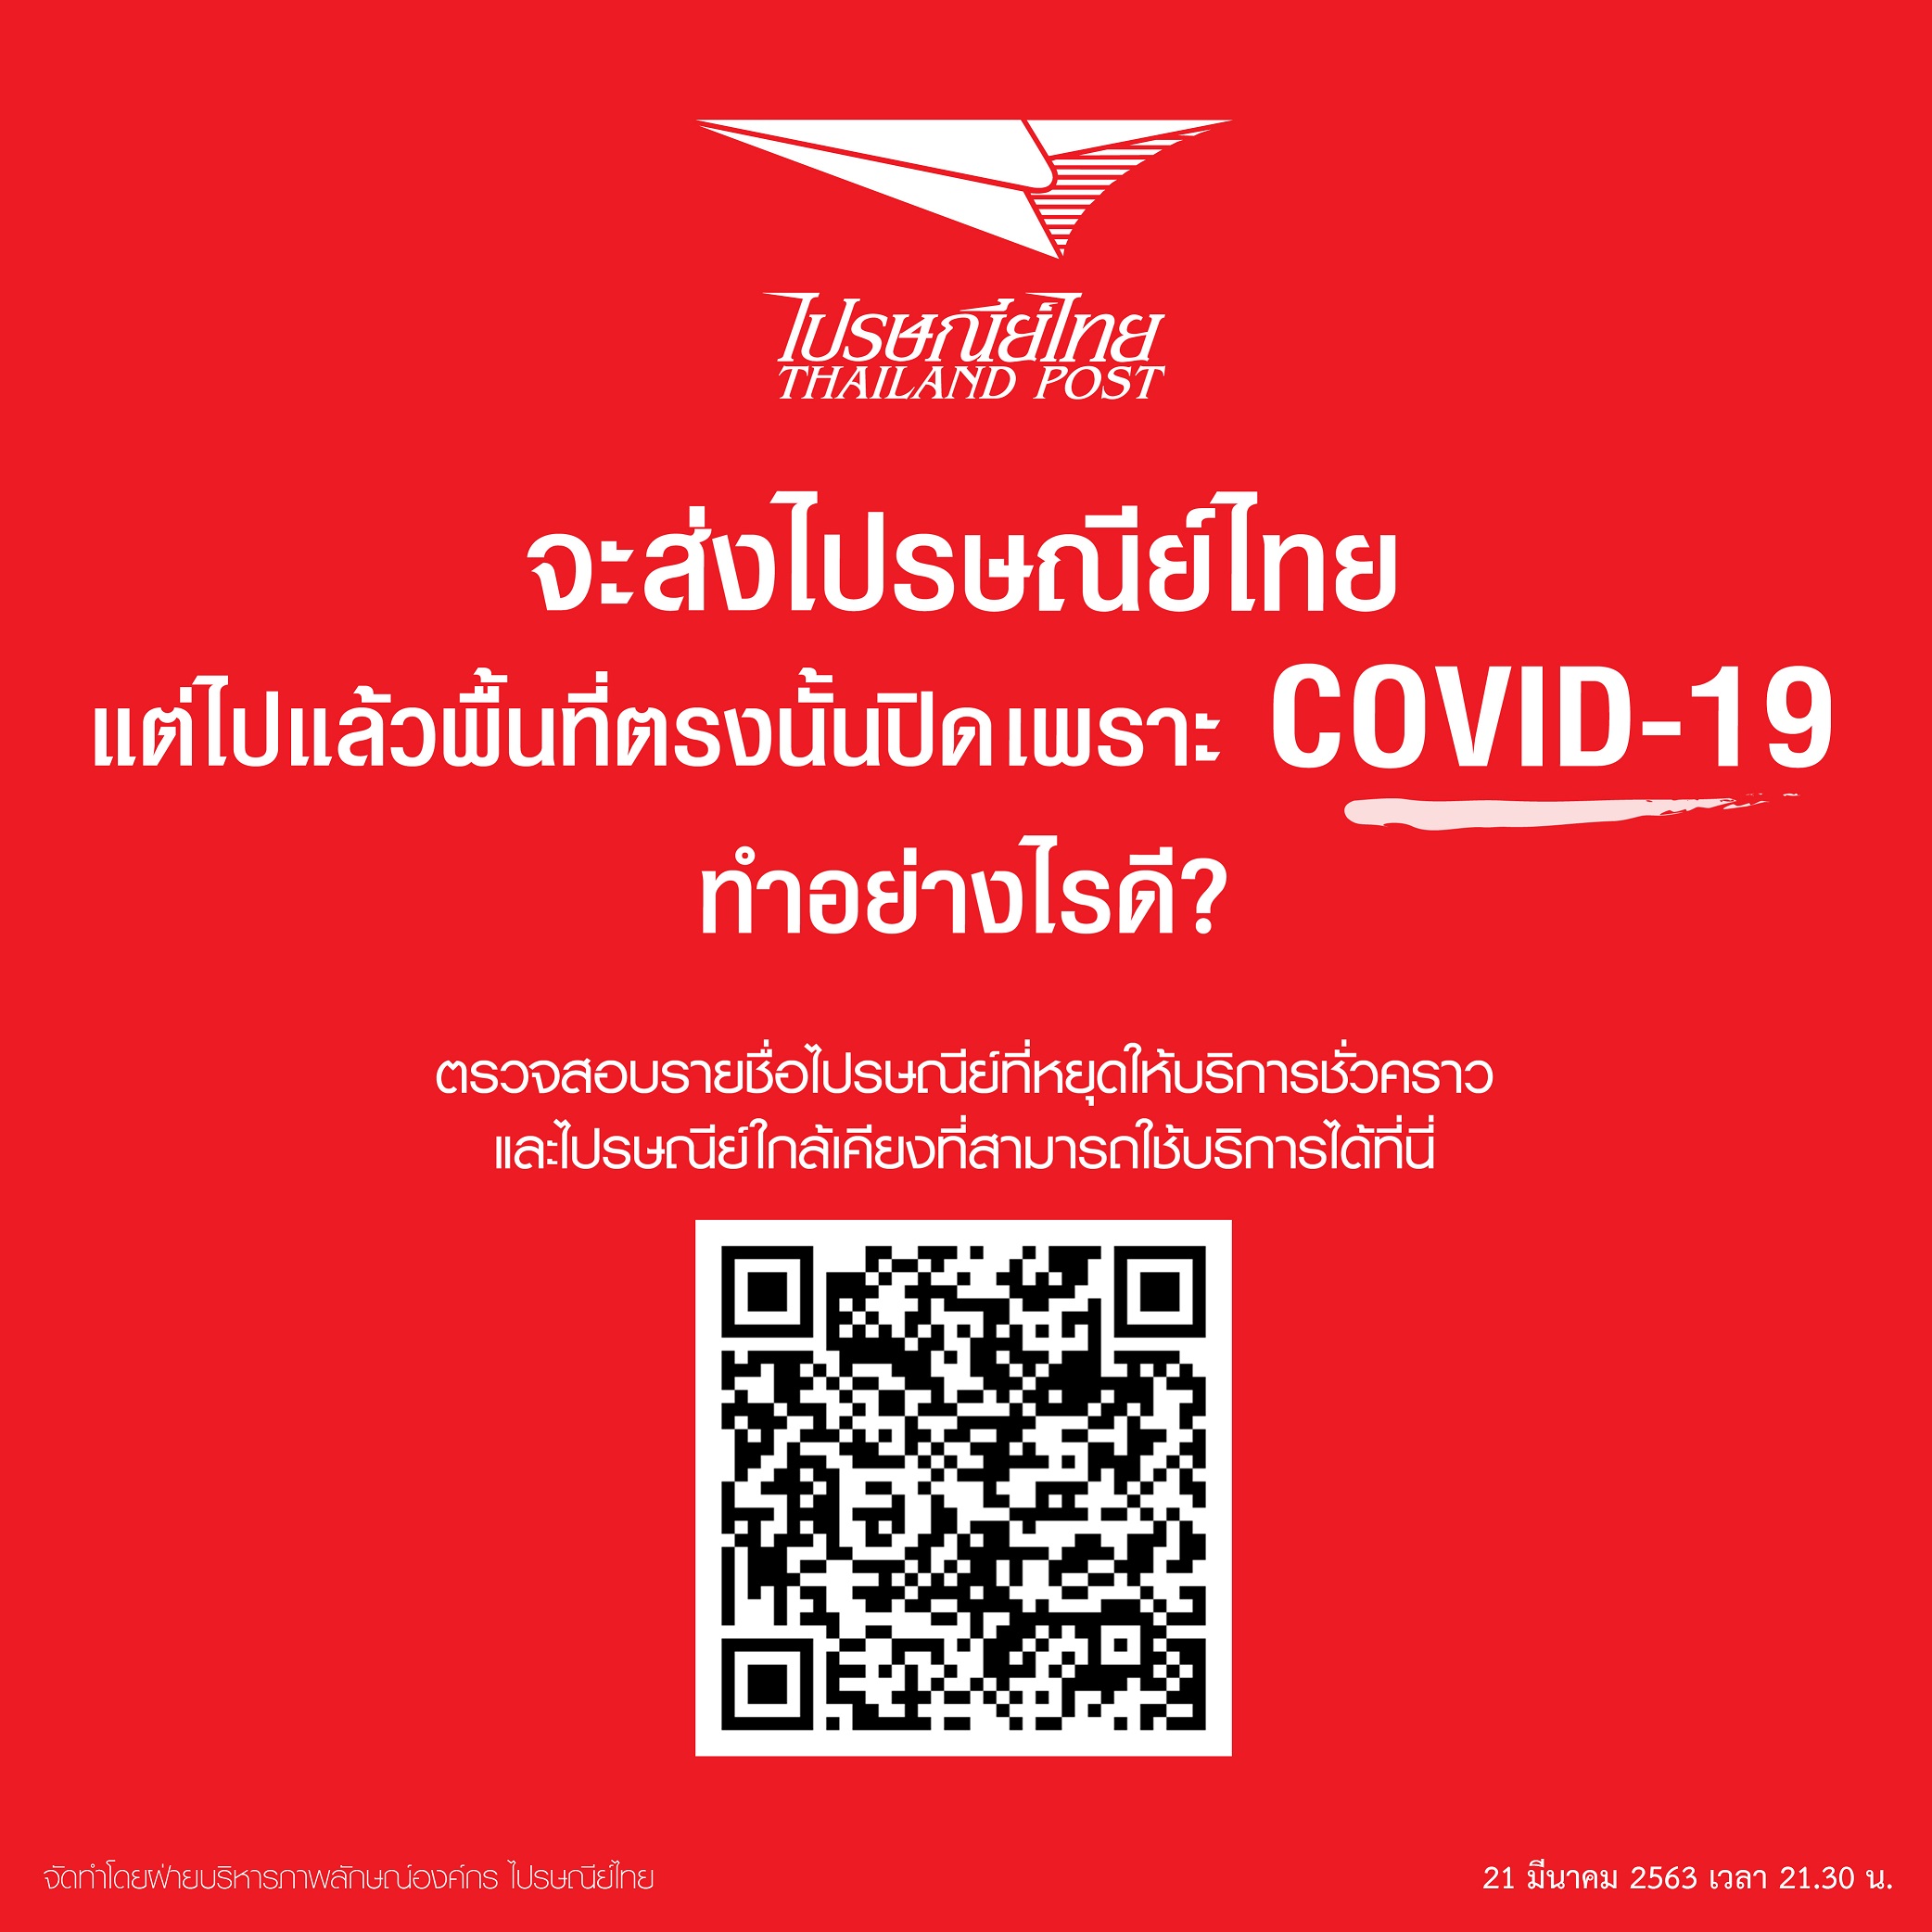 ไปรษณีย์ไทย ประกาศเปิดให้บริการตามปกติในช่วงวิกฤติ COVID-19